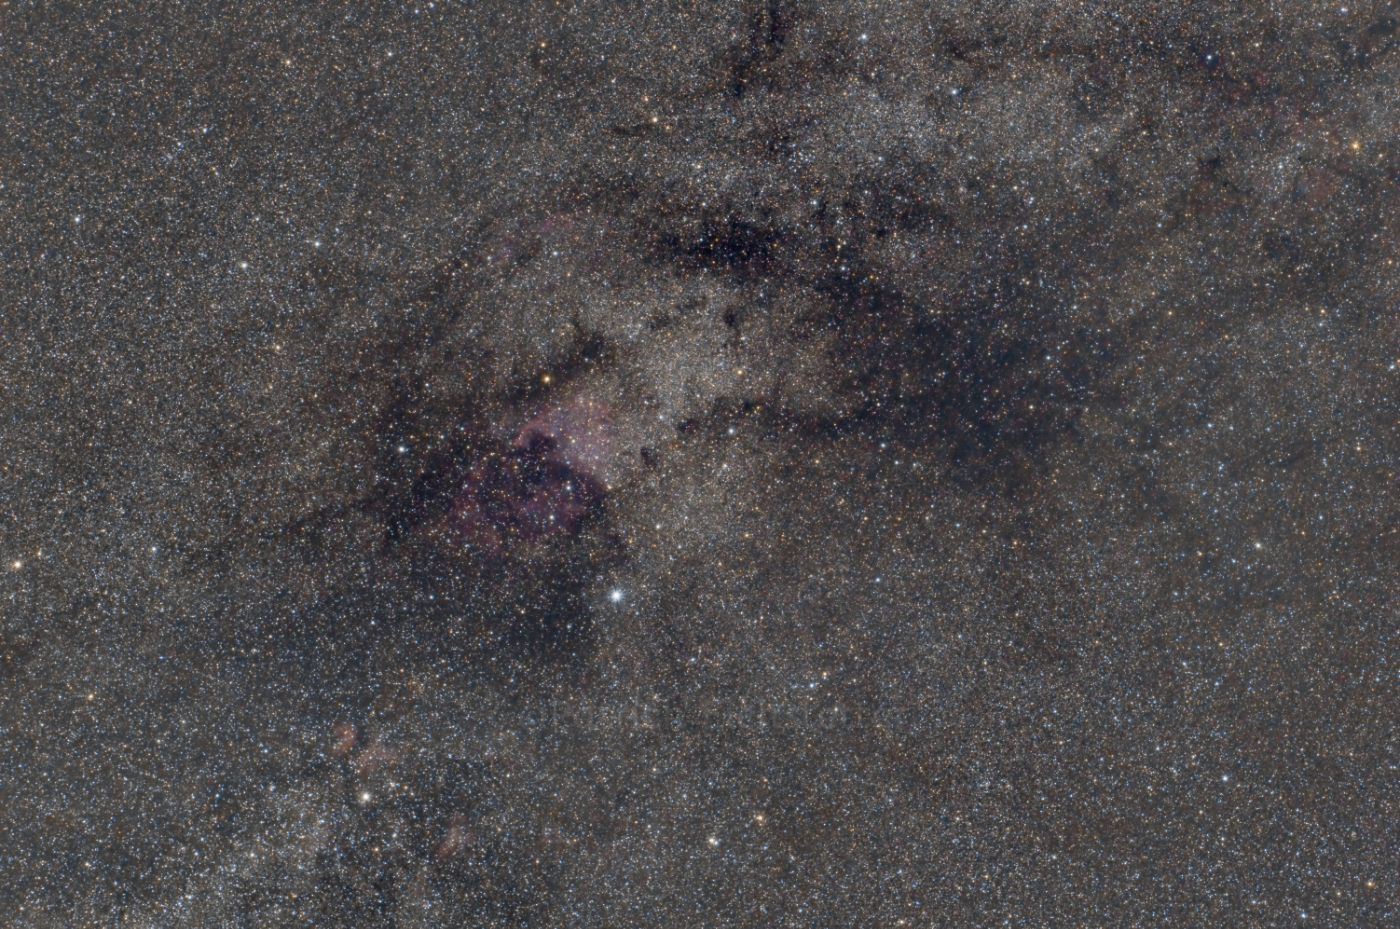 NGC7000 and SADR final edit 2018 test